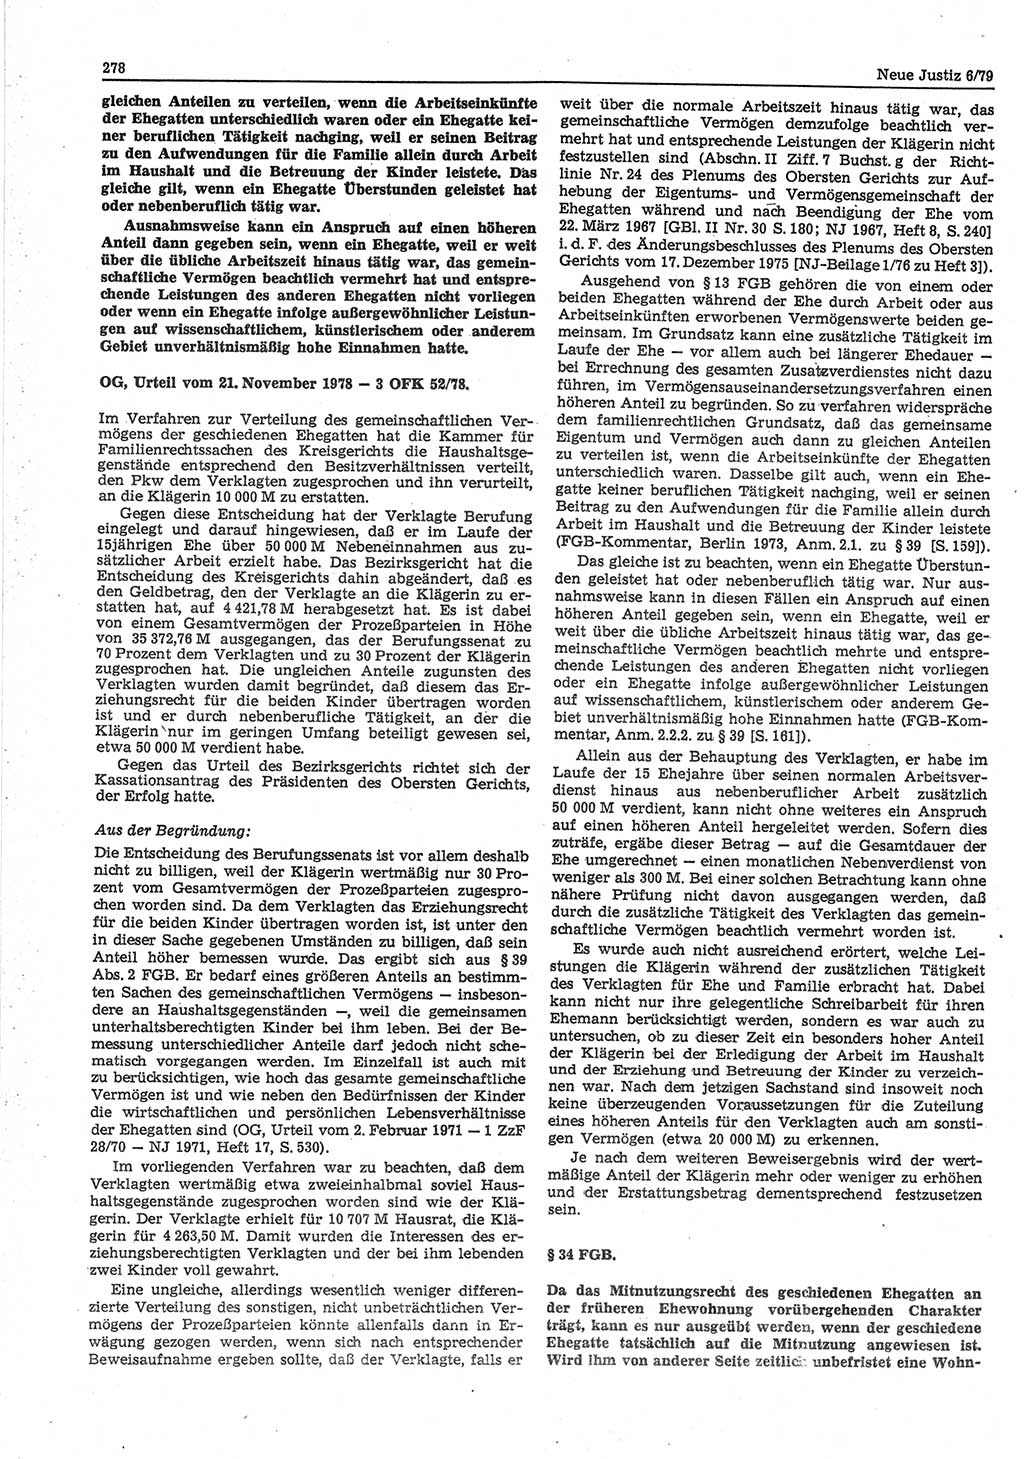 Neue Justiz (NJ), Zeitschrift für sozialistisches Recht und Gesetzlichkeit [Deutsche Demokratische Republik (DDR)], 33. Jahrgang 1979, Seite 278 (NJ DDR 1979, S. 278)